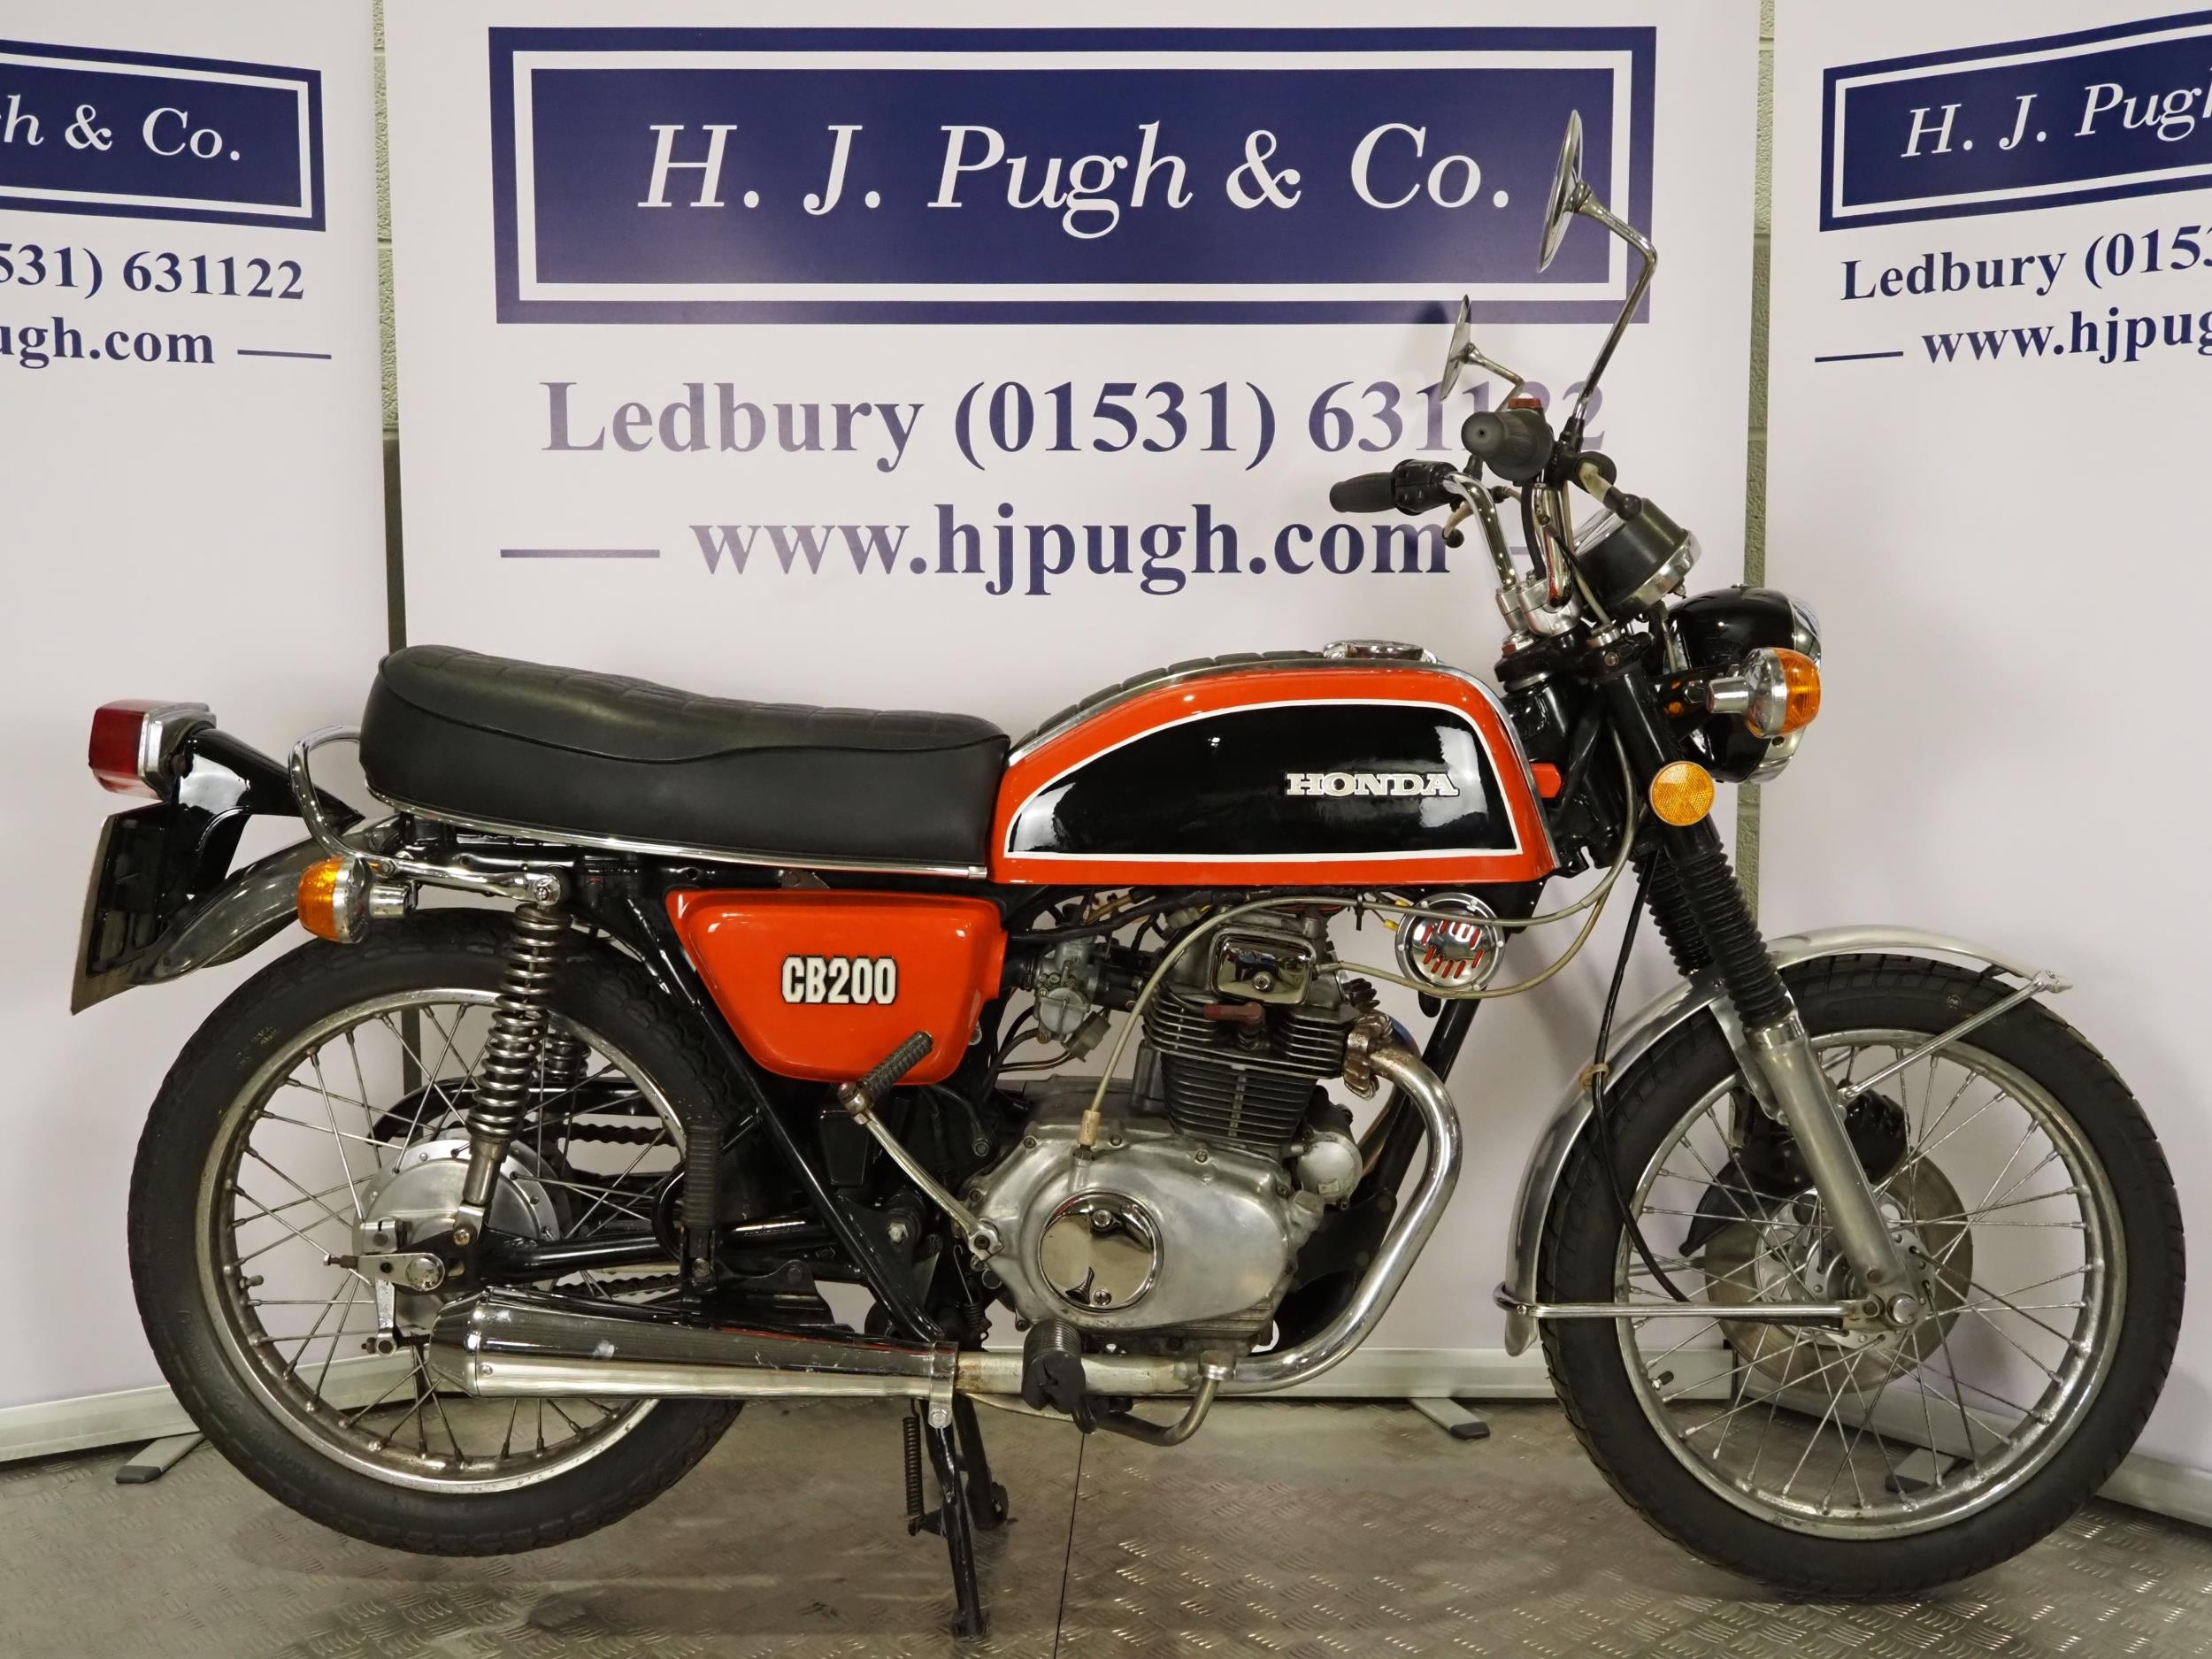 Honda CB200 motorcycle. 1977. 198cc Frame No. CB200 1039706 Engine No. CB200-1041972 Runs and rides.